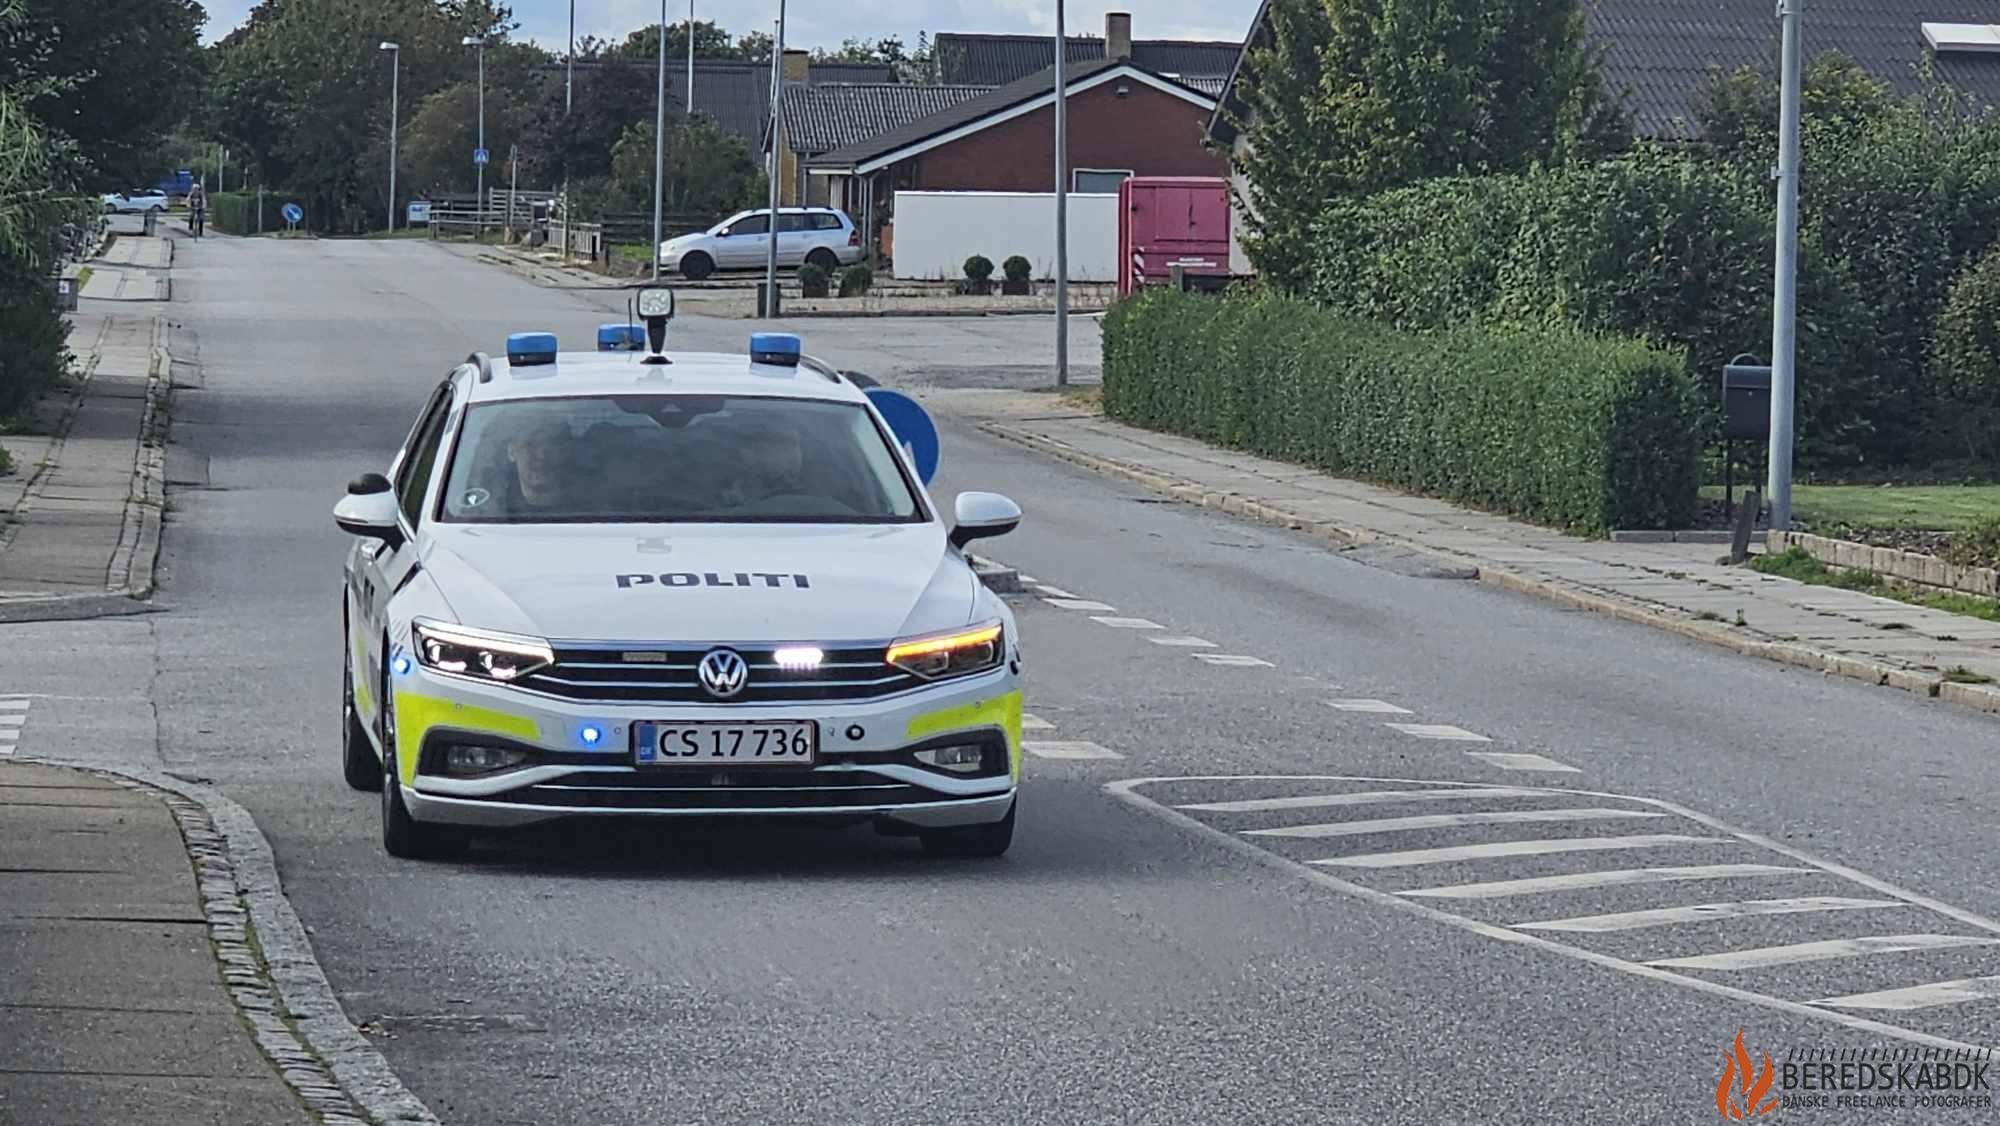 28/10-23 Politiet undersøger hændelse i Holstebro